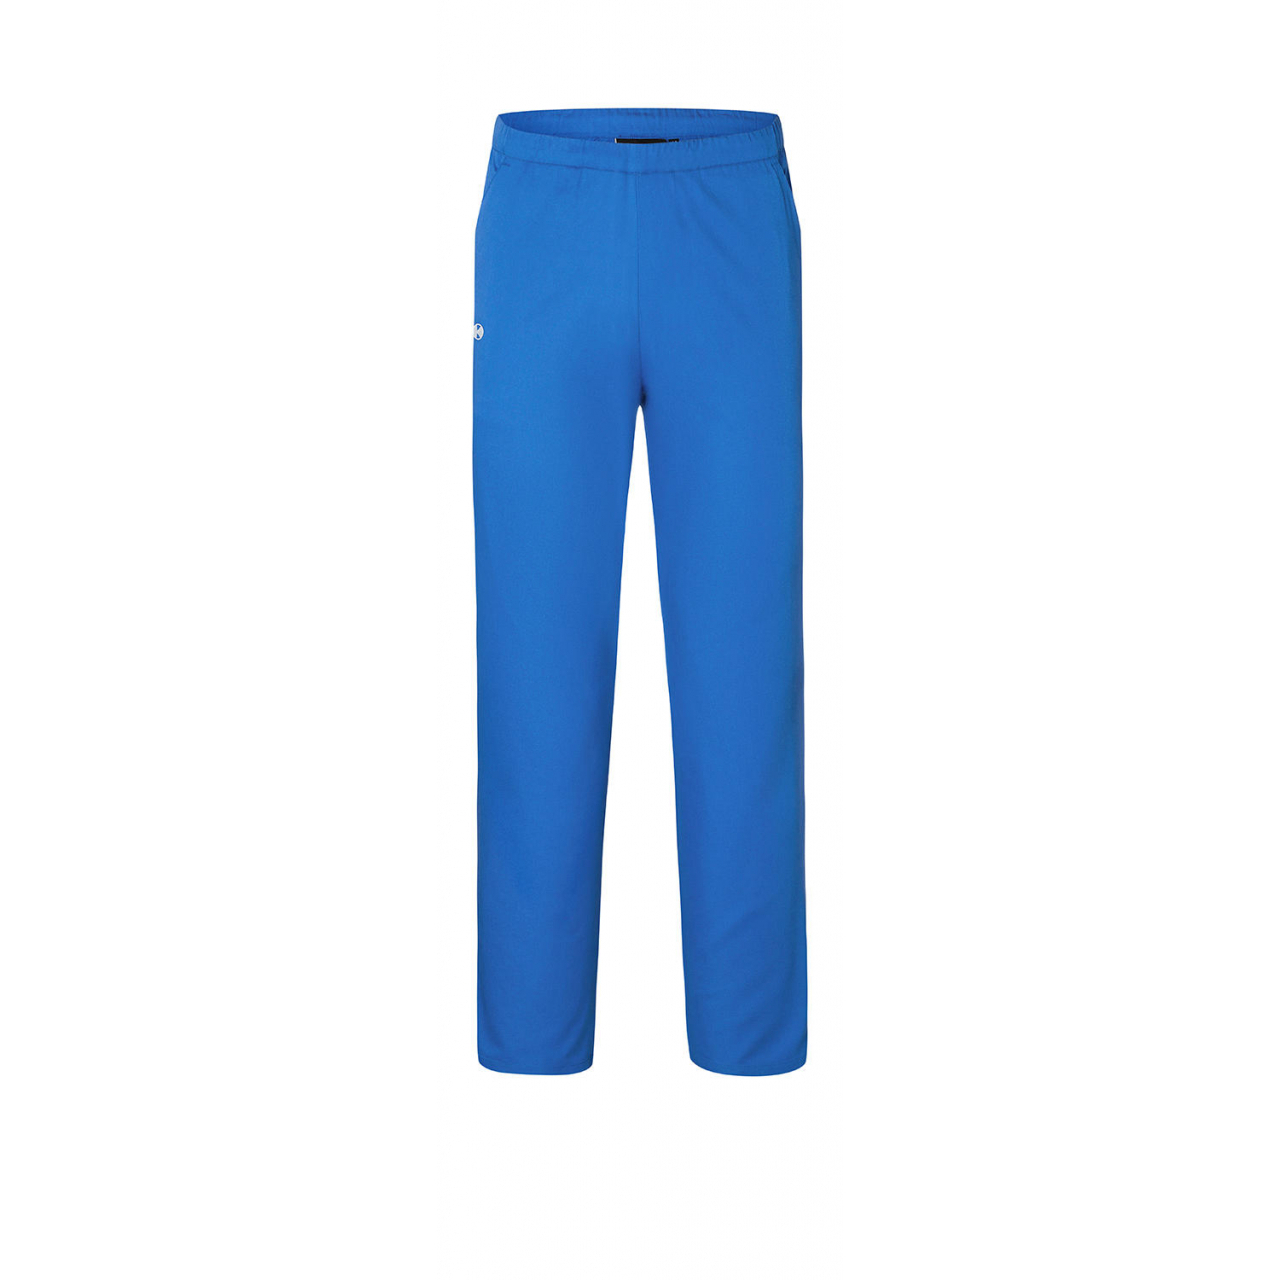 Kalhoty Karlowsky Essential - modré, S